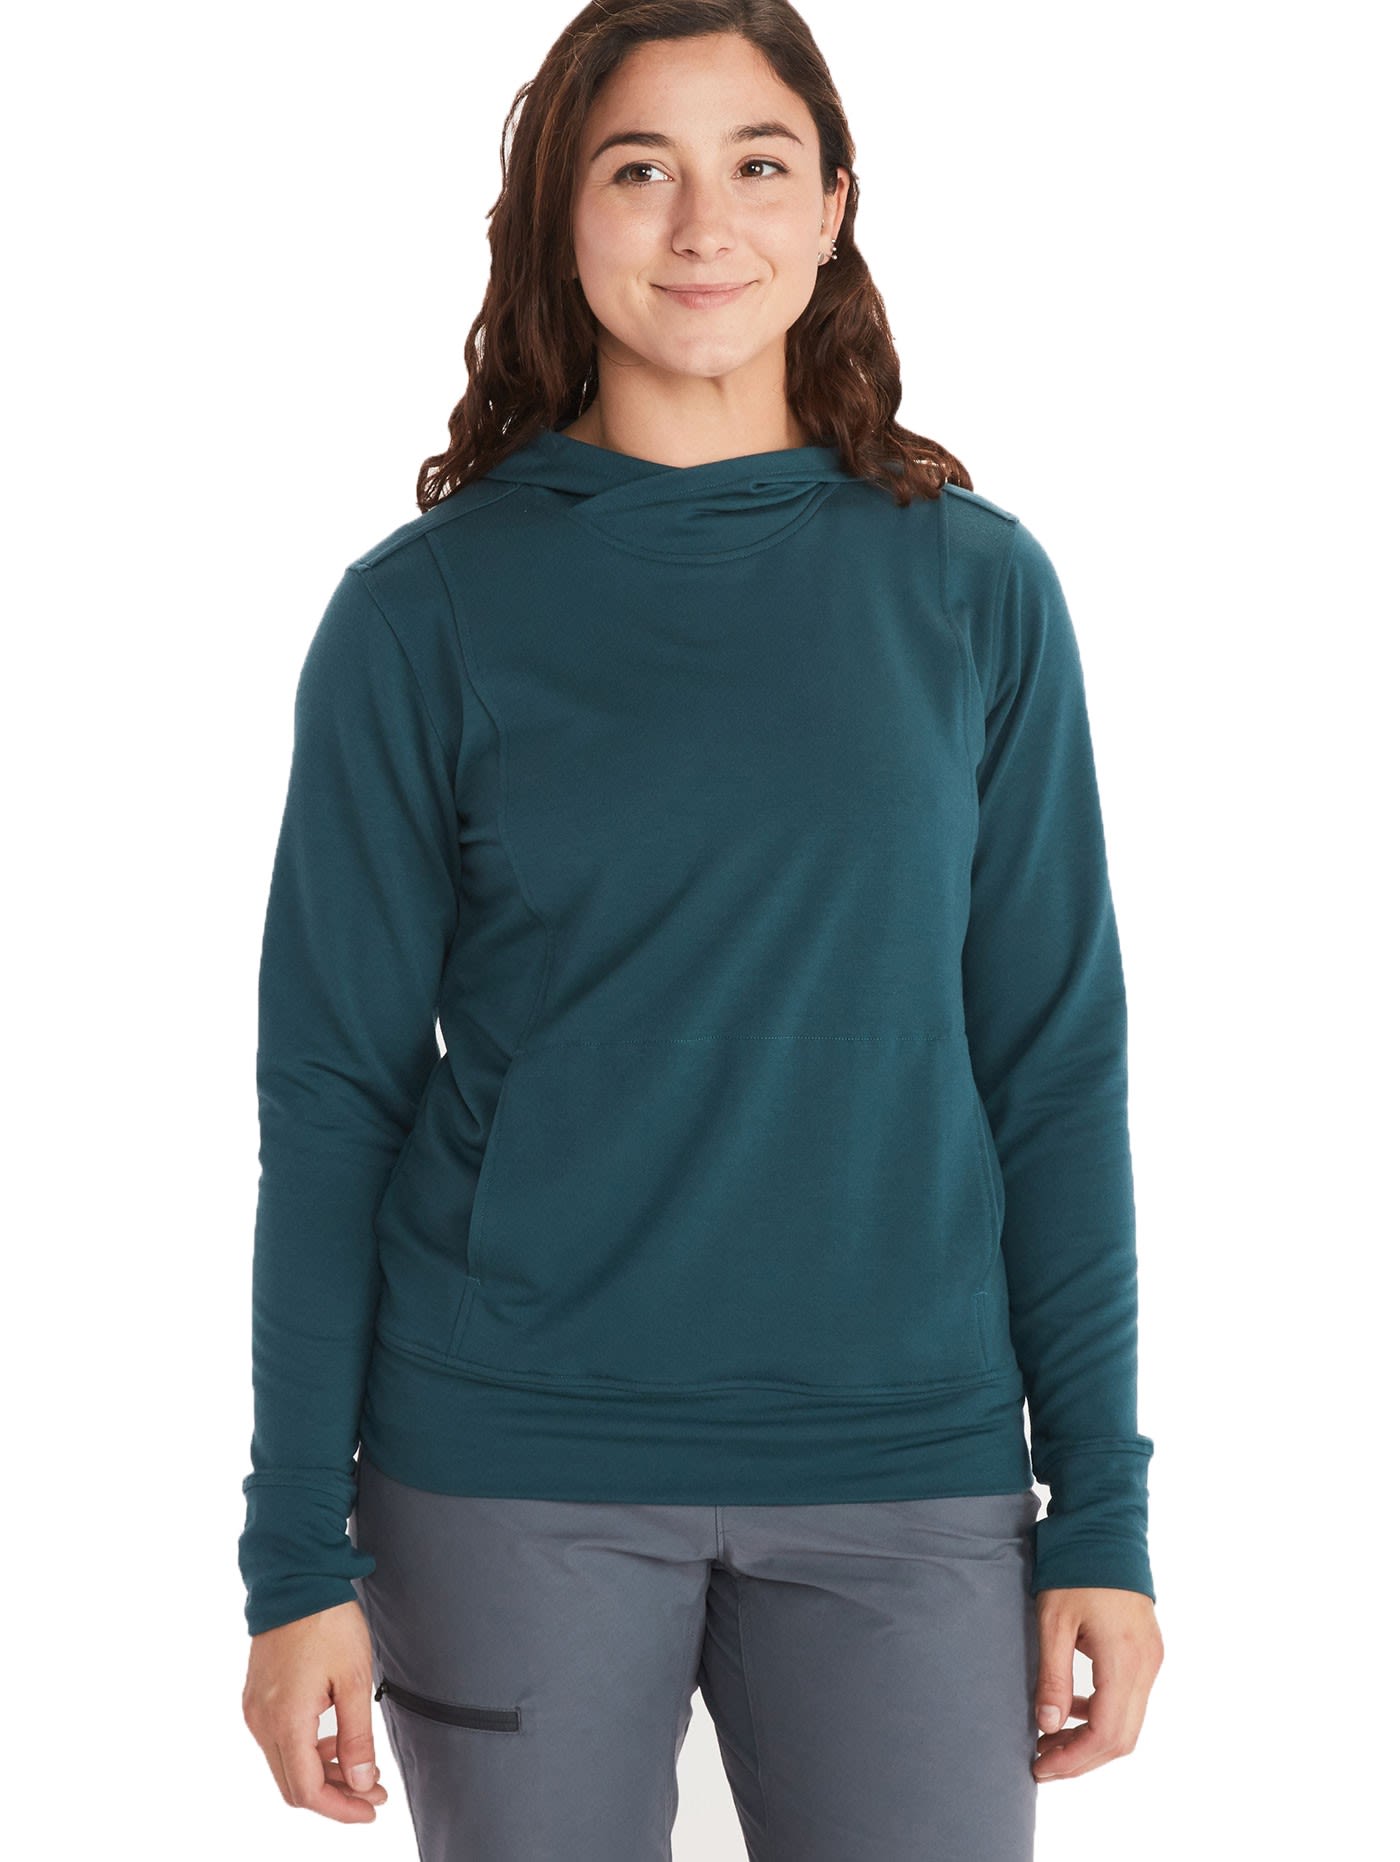 Marmot La Linea Hoody Grn- Female Sweaters und Hoodies- Grsse S - Farbe Stargazer